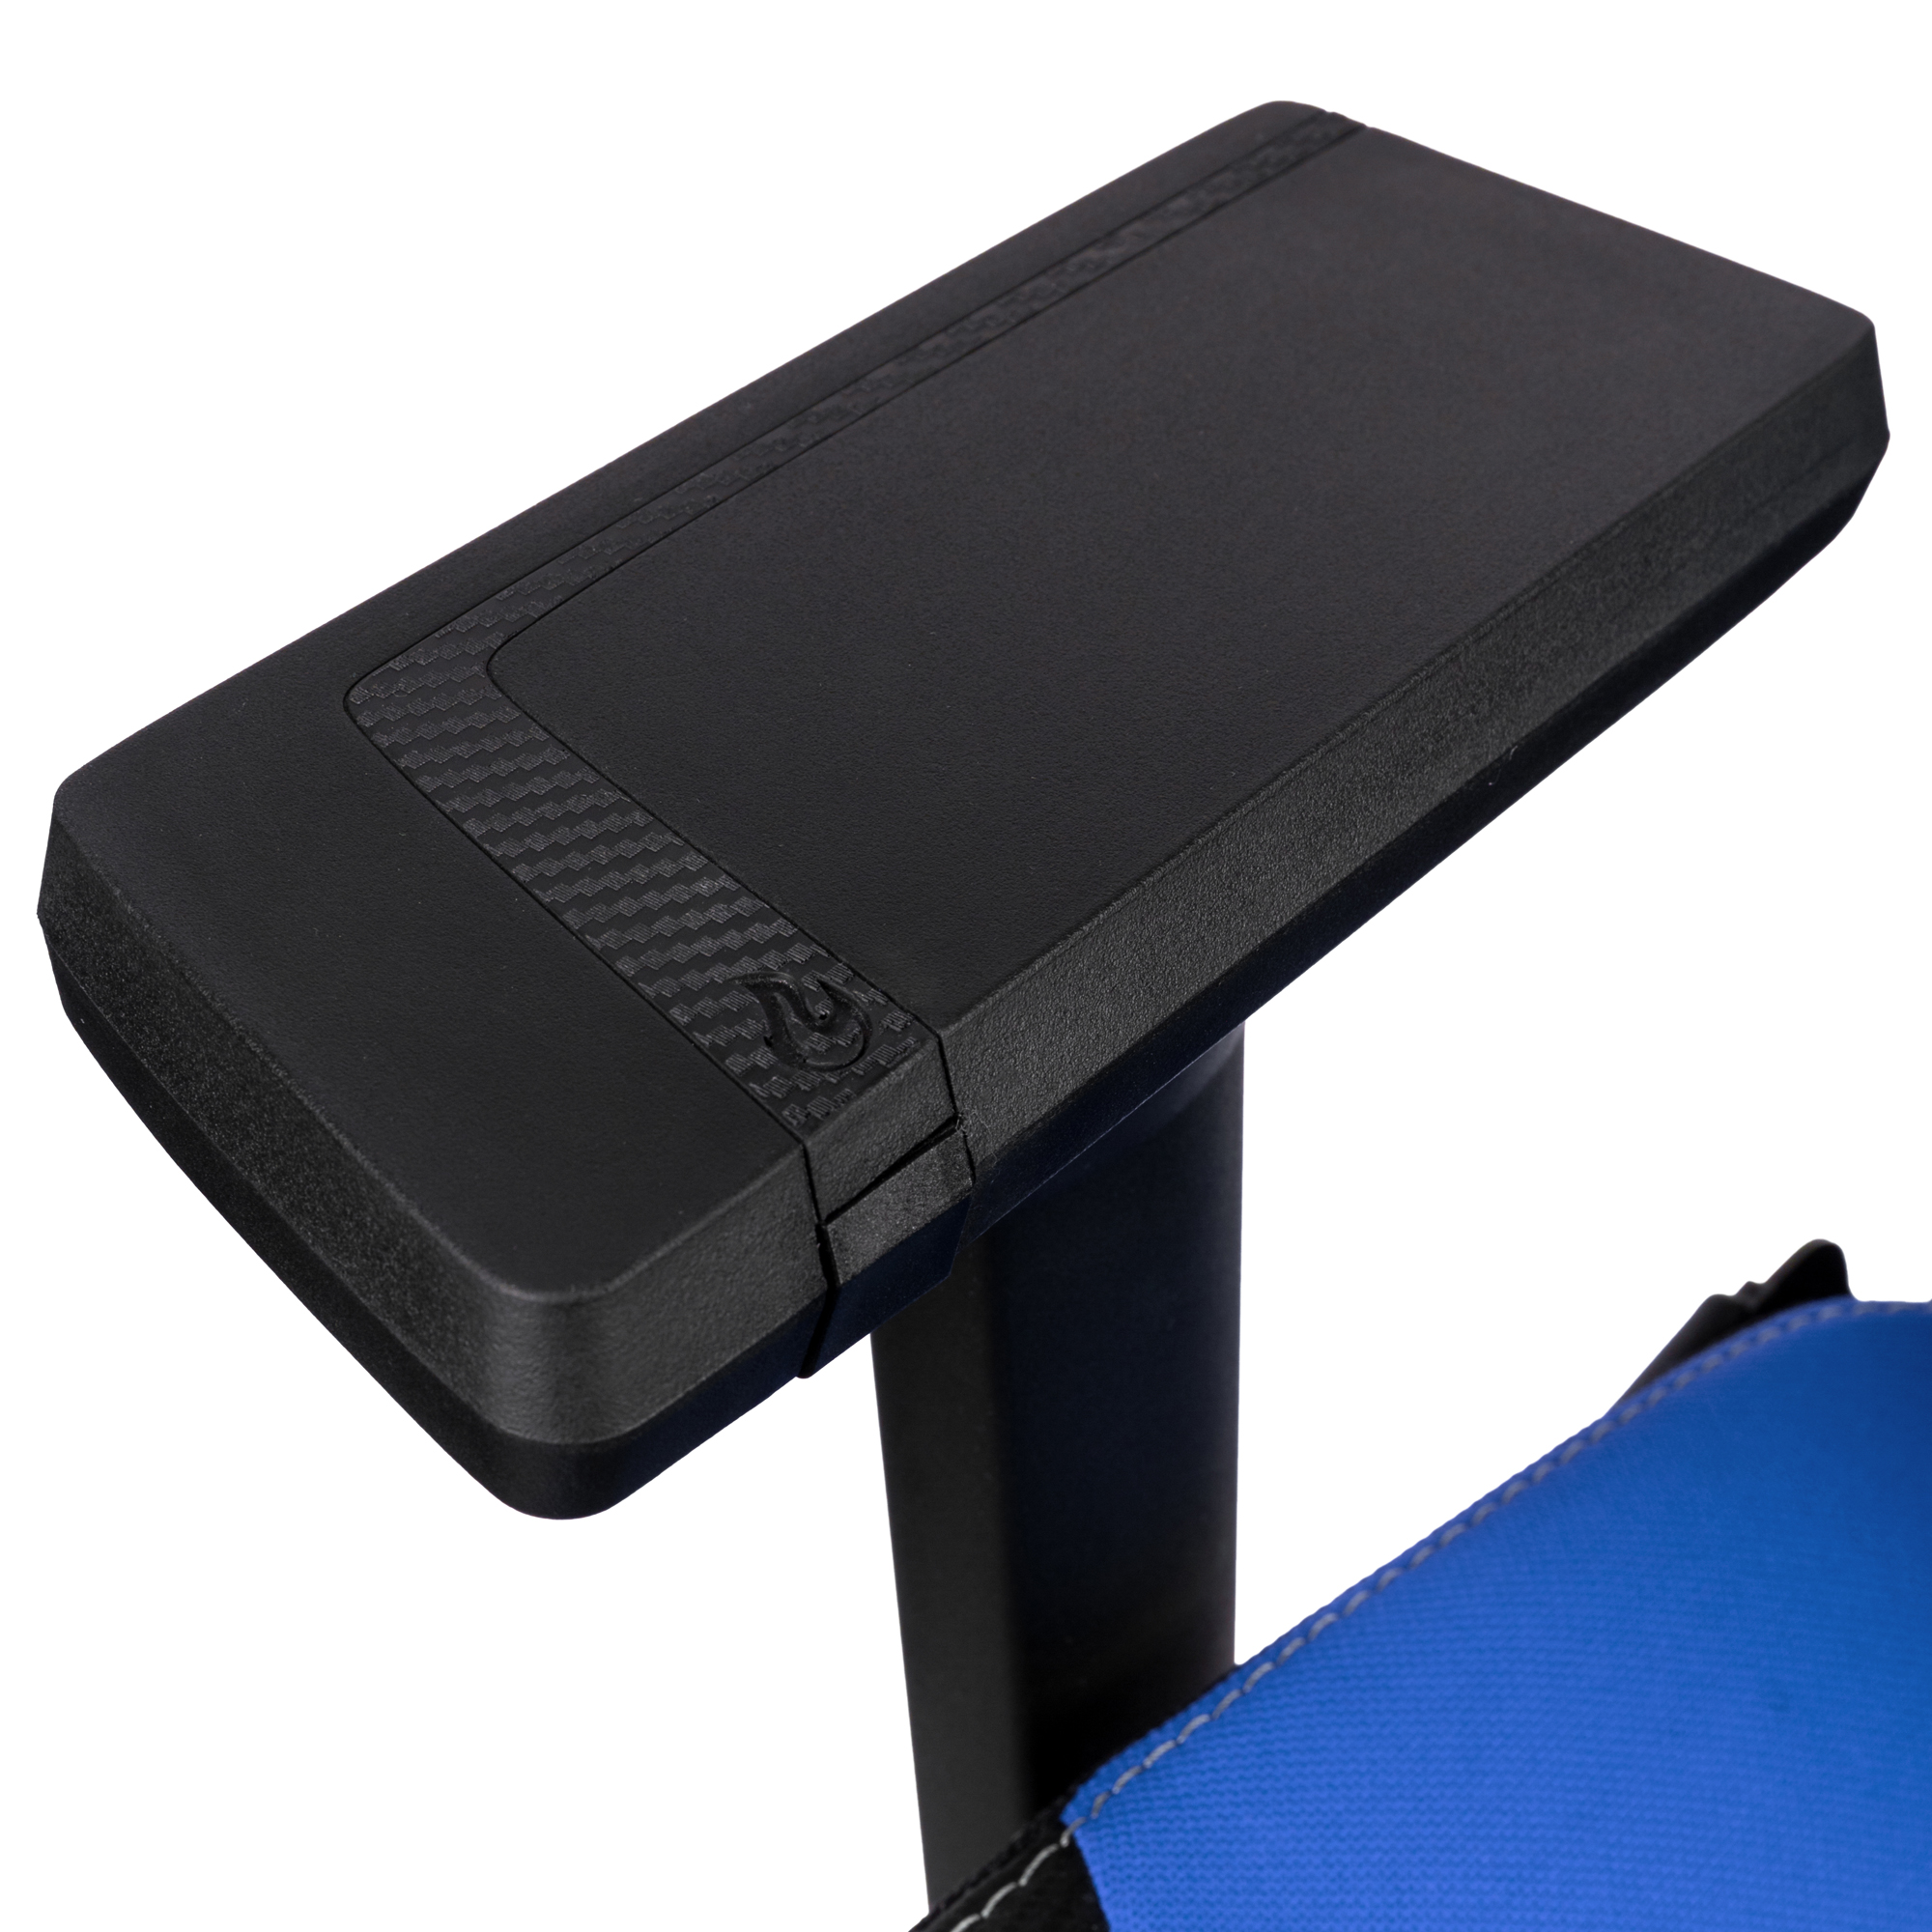 X1000 Gaming Chair Black/Blue